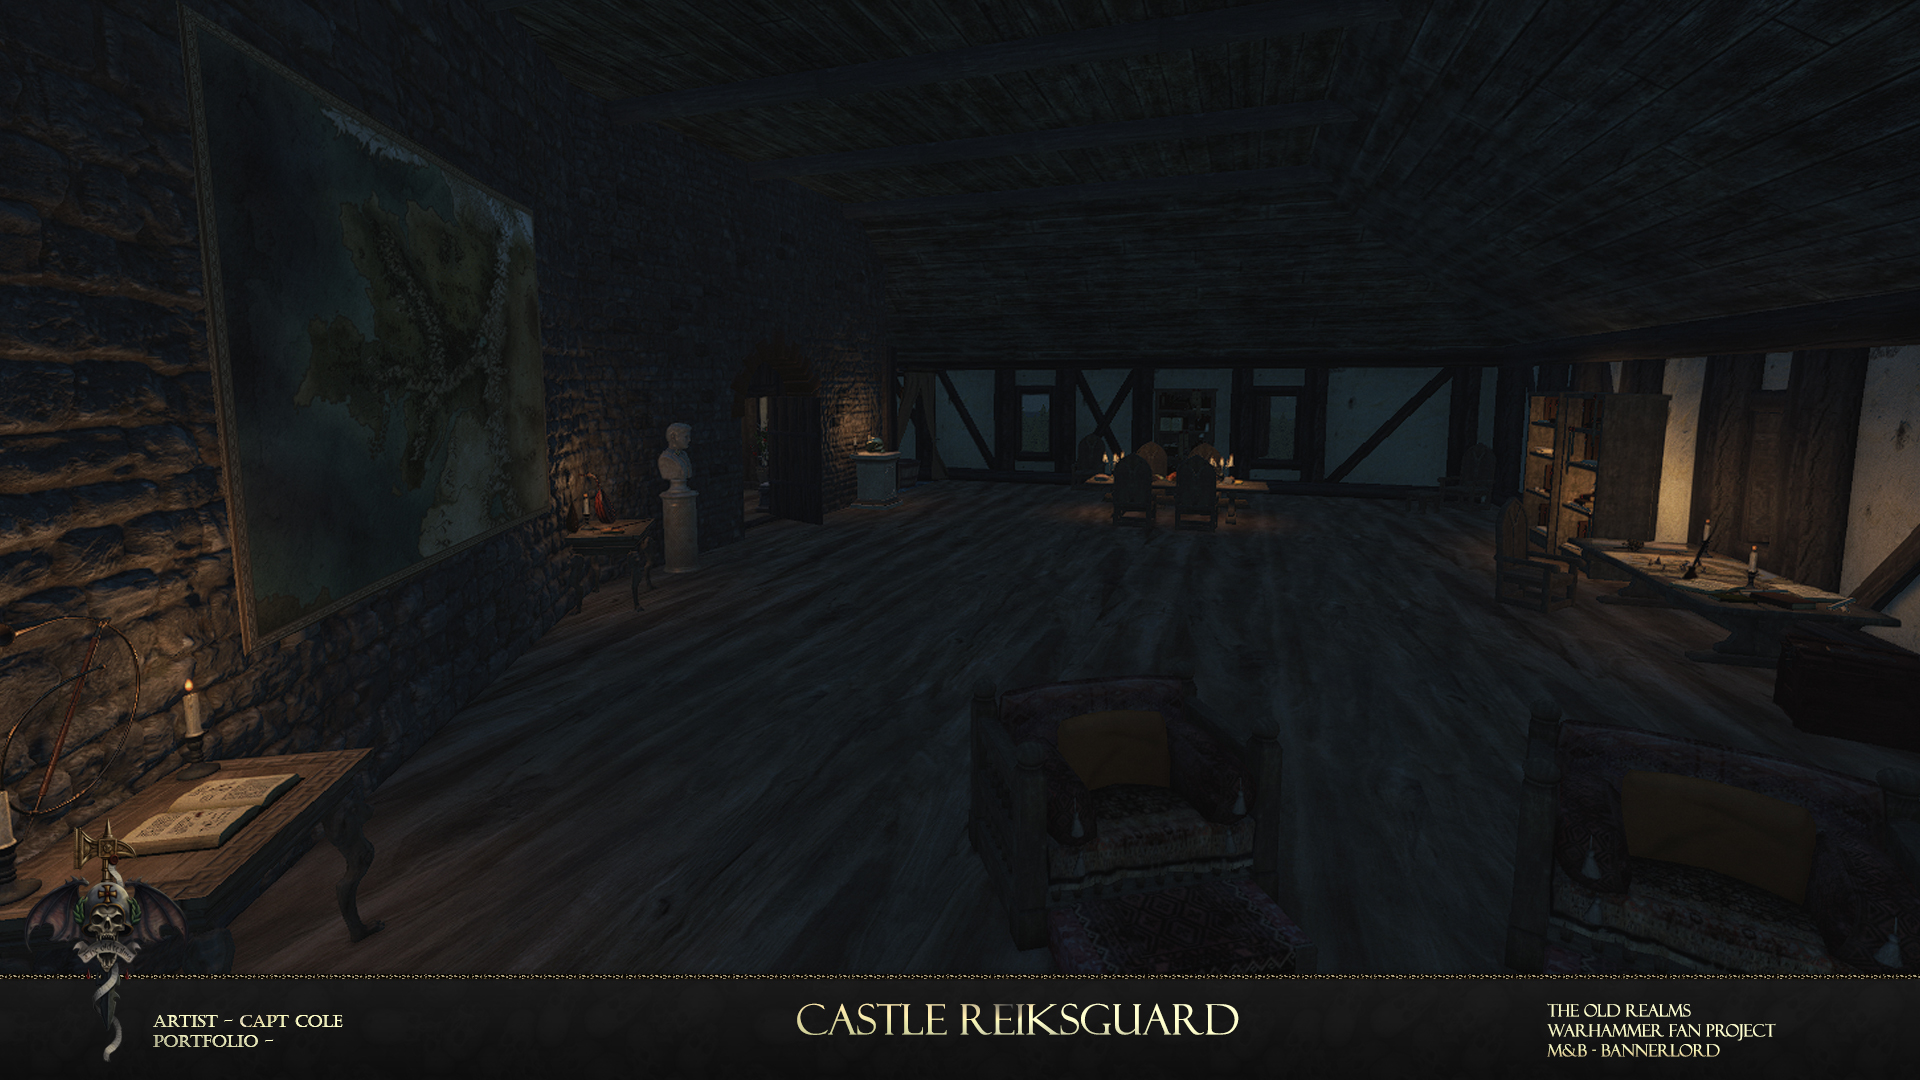 Castle reiksguard 7